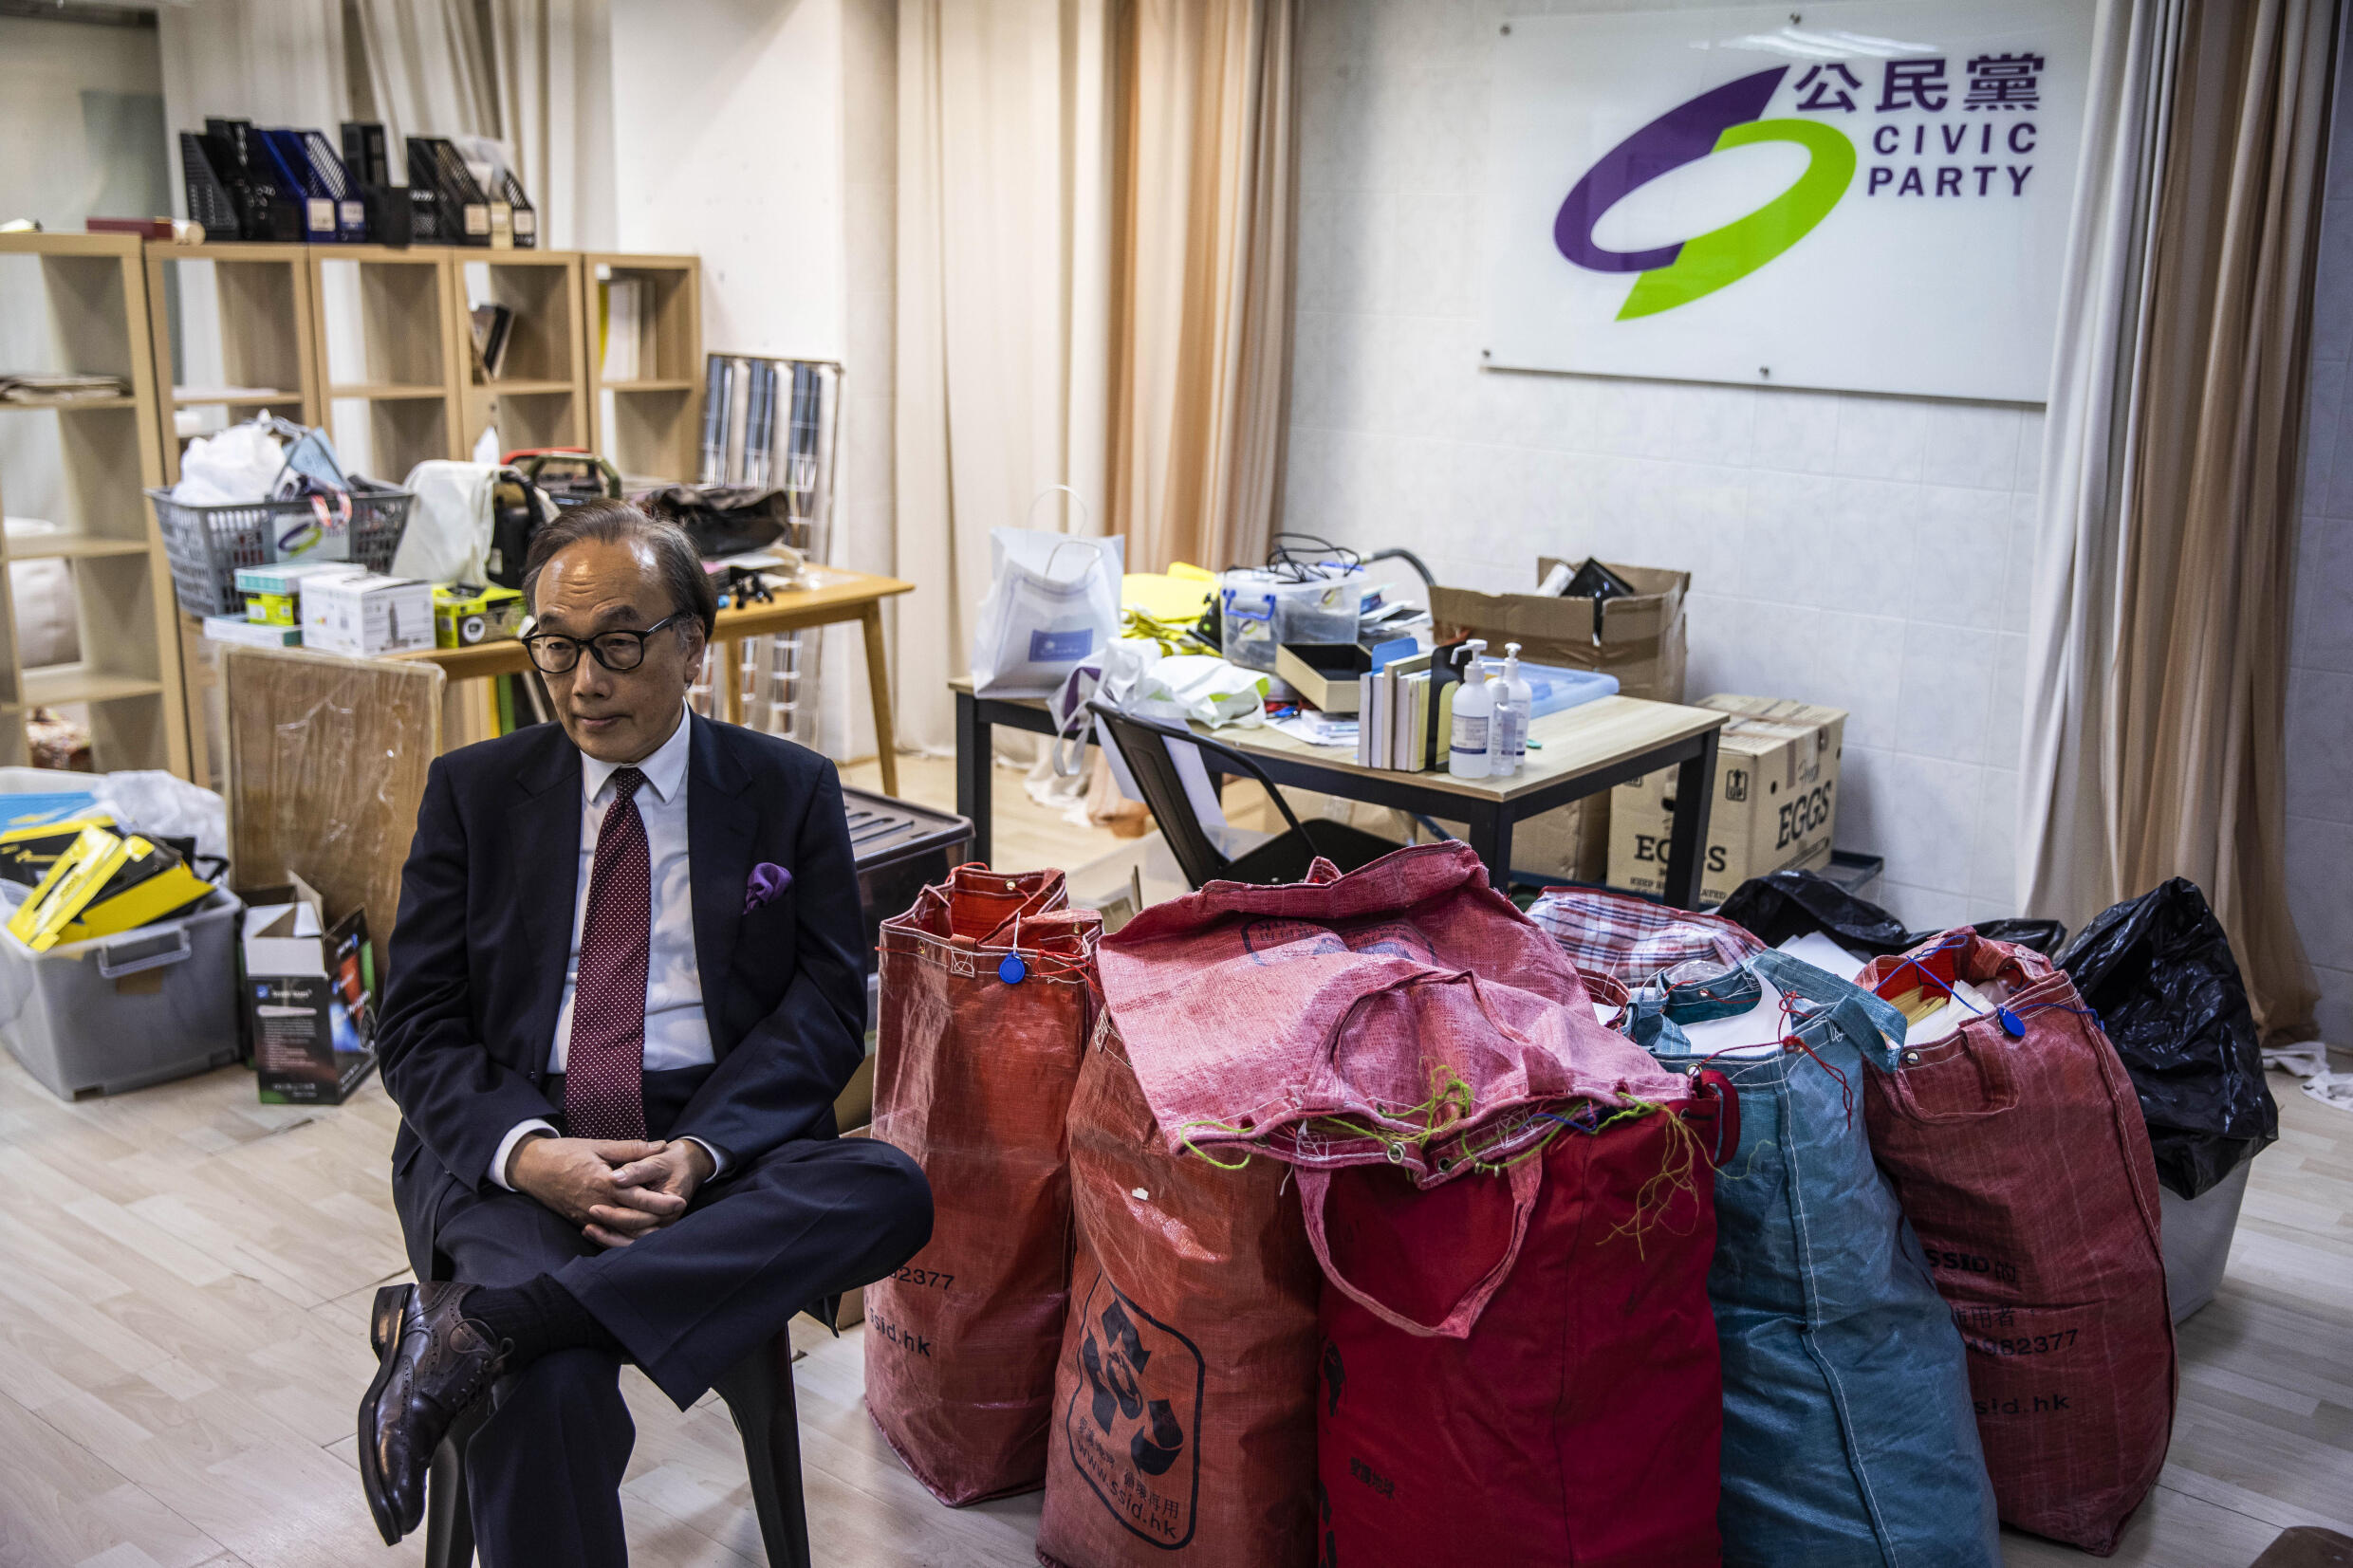 „Die Zeiten haben sich geändert“, sagte der erfahrene Hongkonger Politiker Alan Leong gegenüber AFP im inzwischen geschlossenen Hauptquartier der Civic Party